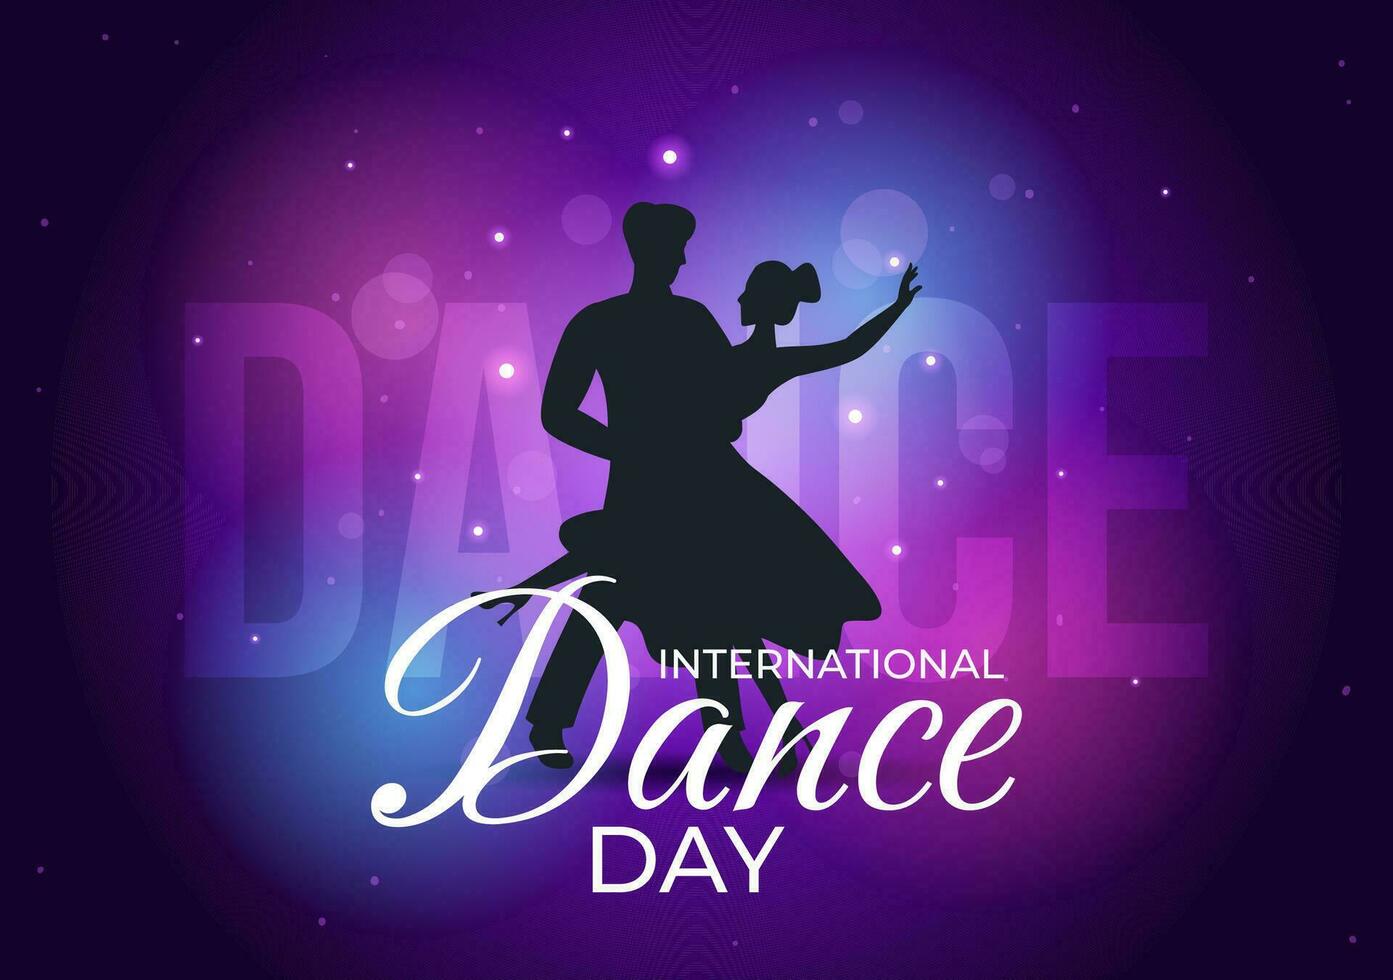 internacional danza día vector ilustración en 29 abril con profesional bailando ejecutando Pareja o soltero a etapa en plano dibujos animados antecedentes